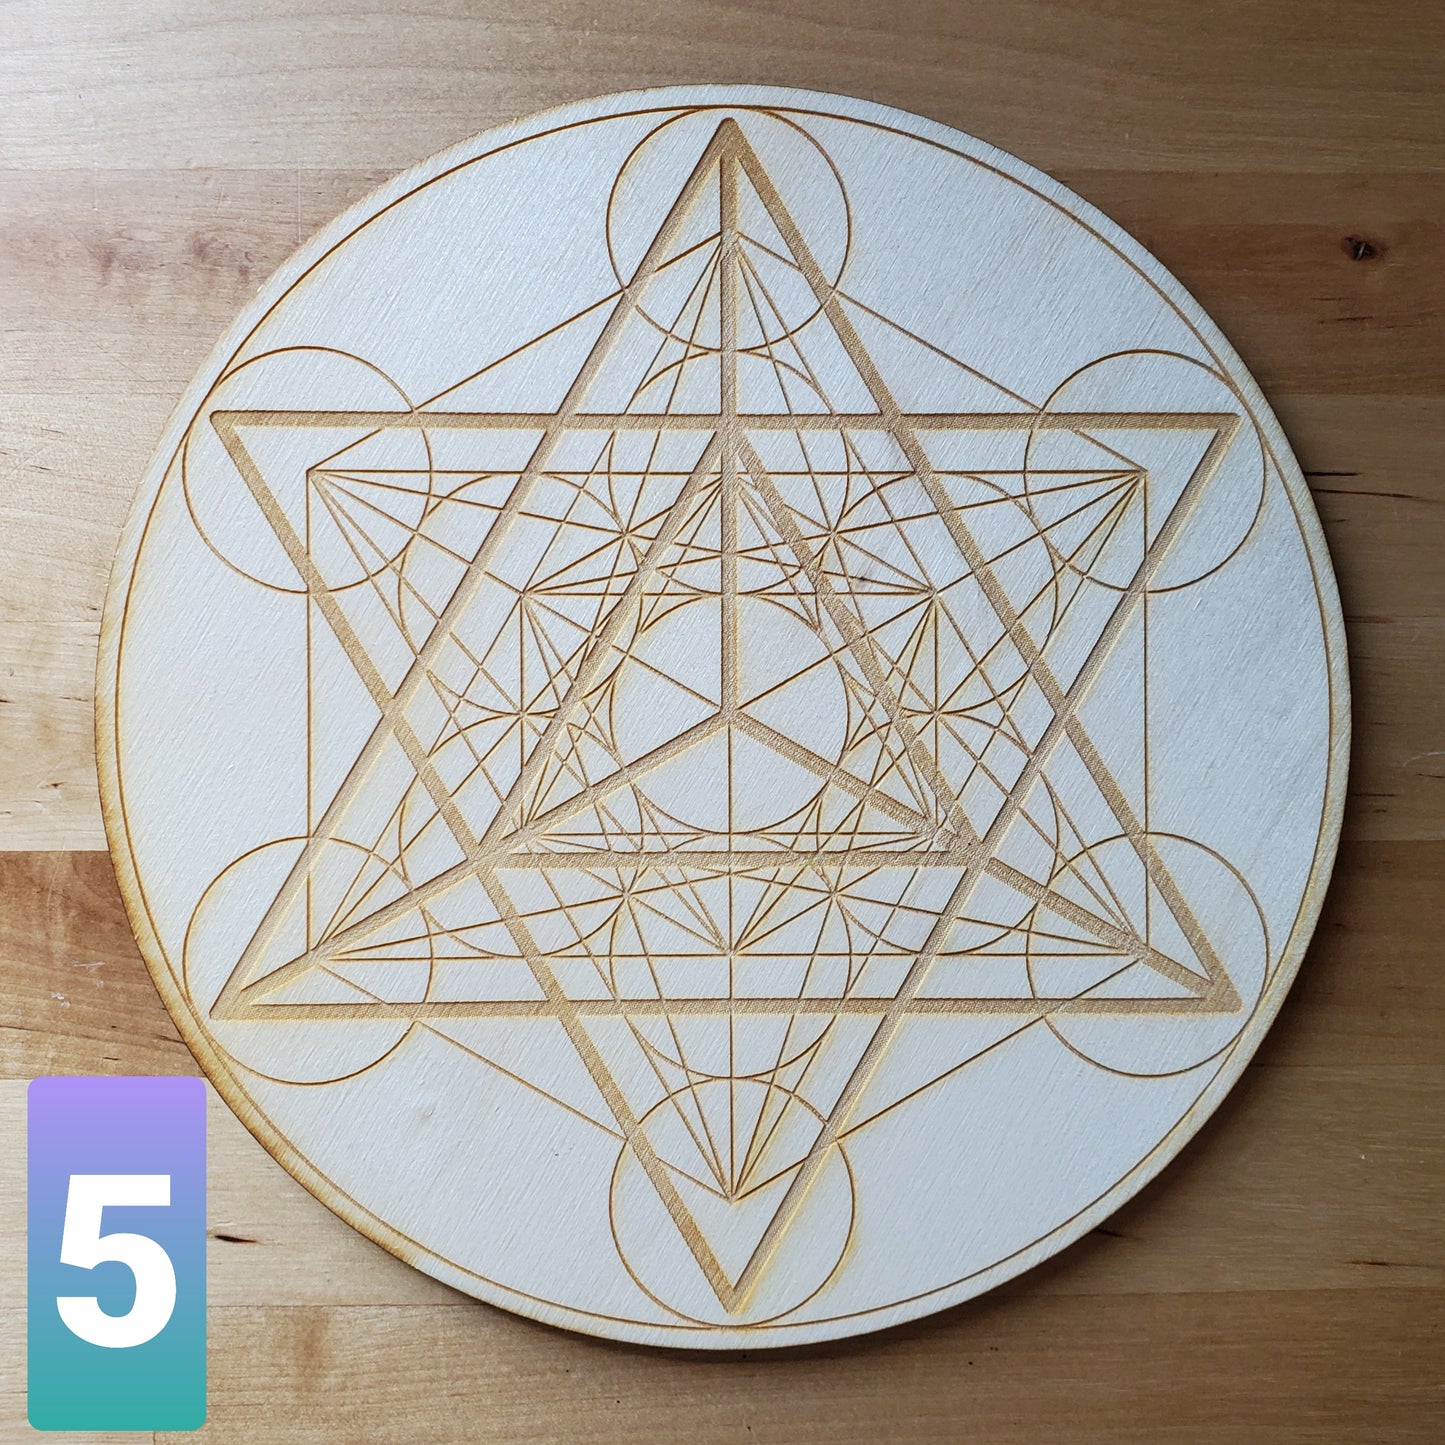 Merkaba Meditation Crystal Grid 8 inch